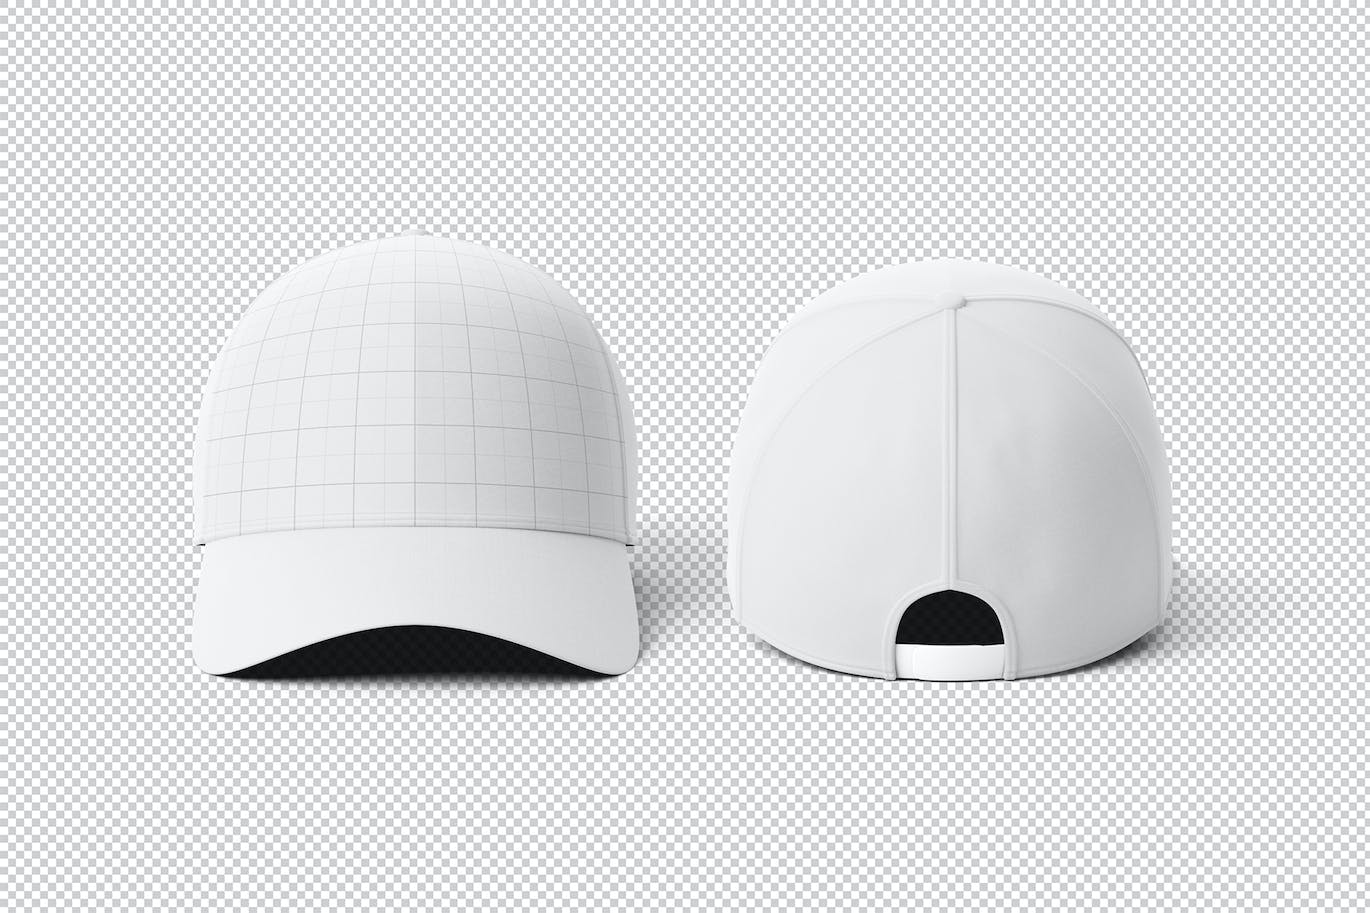 棒球帽运动品牌设计样机素材模板 Baseball Cap Mockup